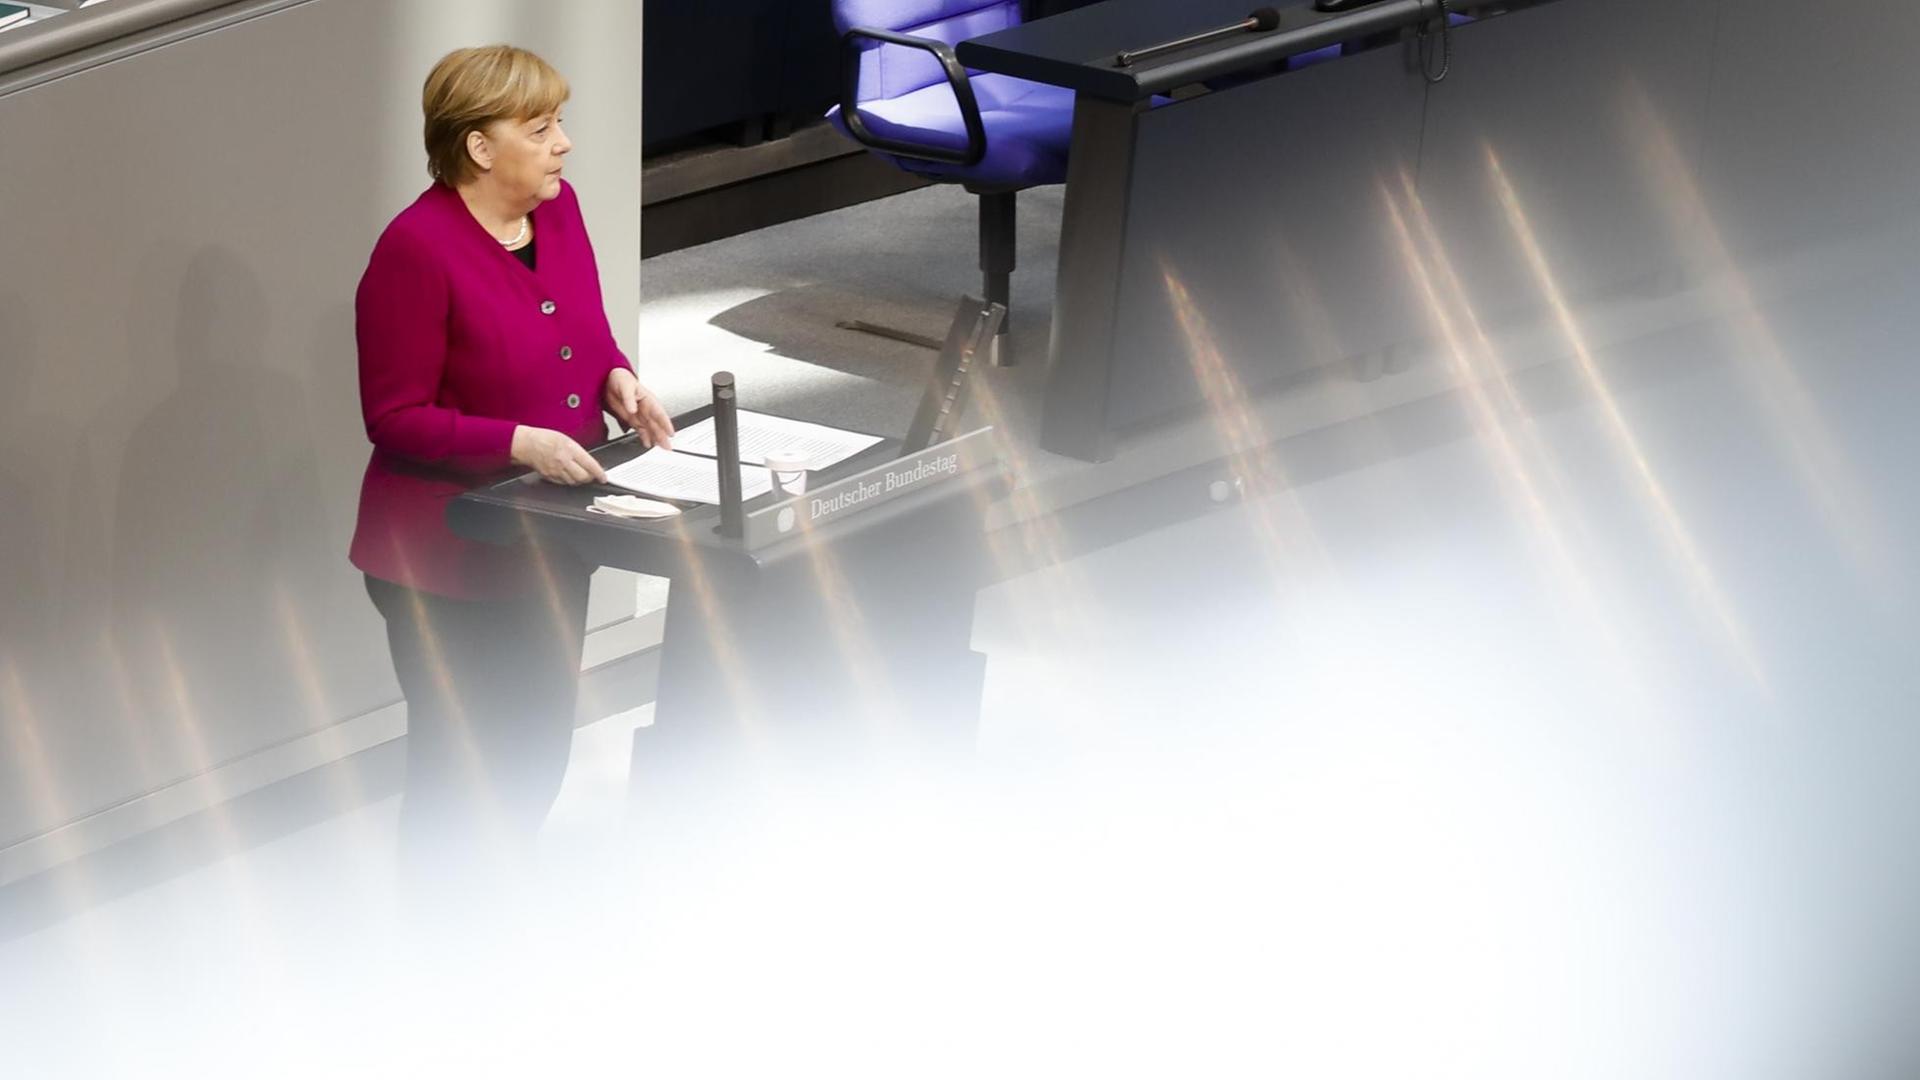 Publizist Christoph Schwennicke - "Angela Merkel ist im Prinzip ohnmächtig"